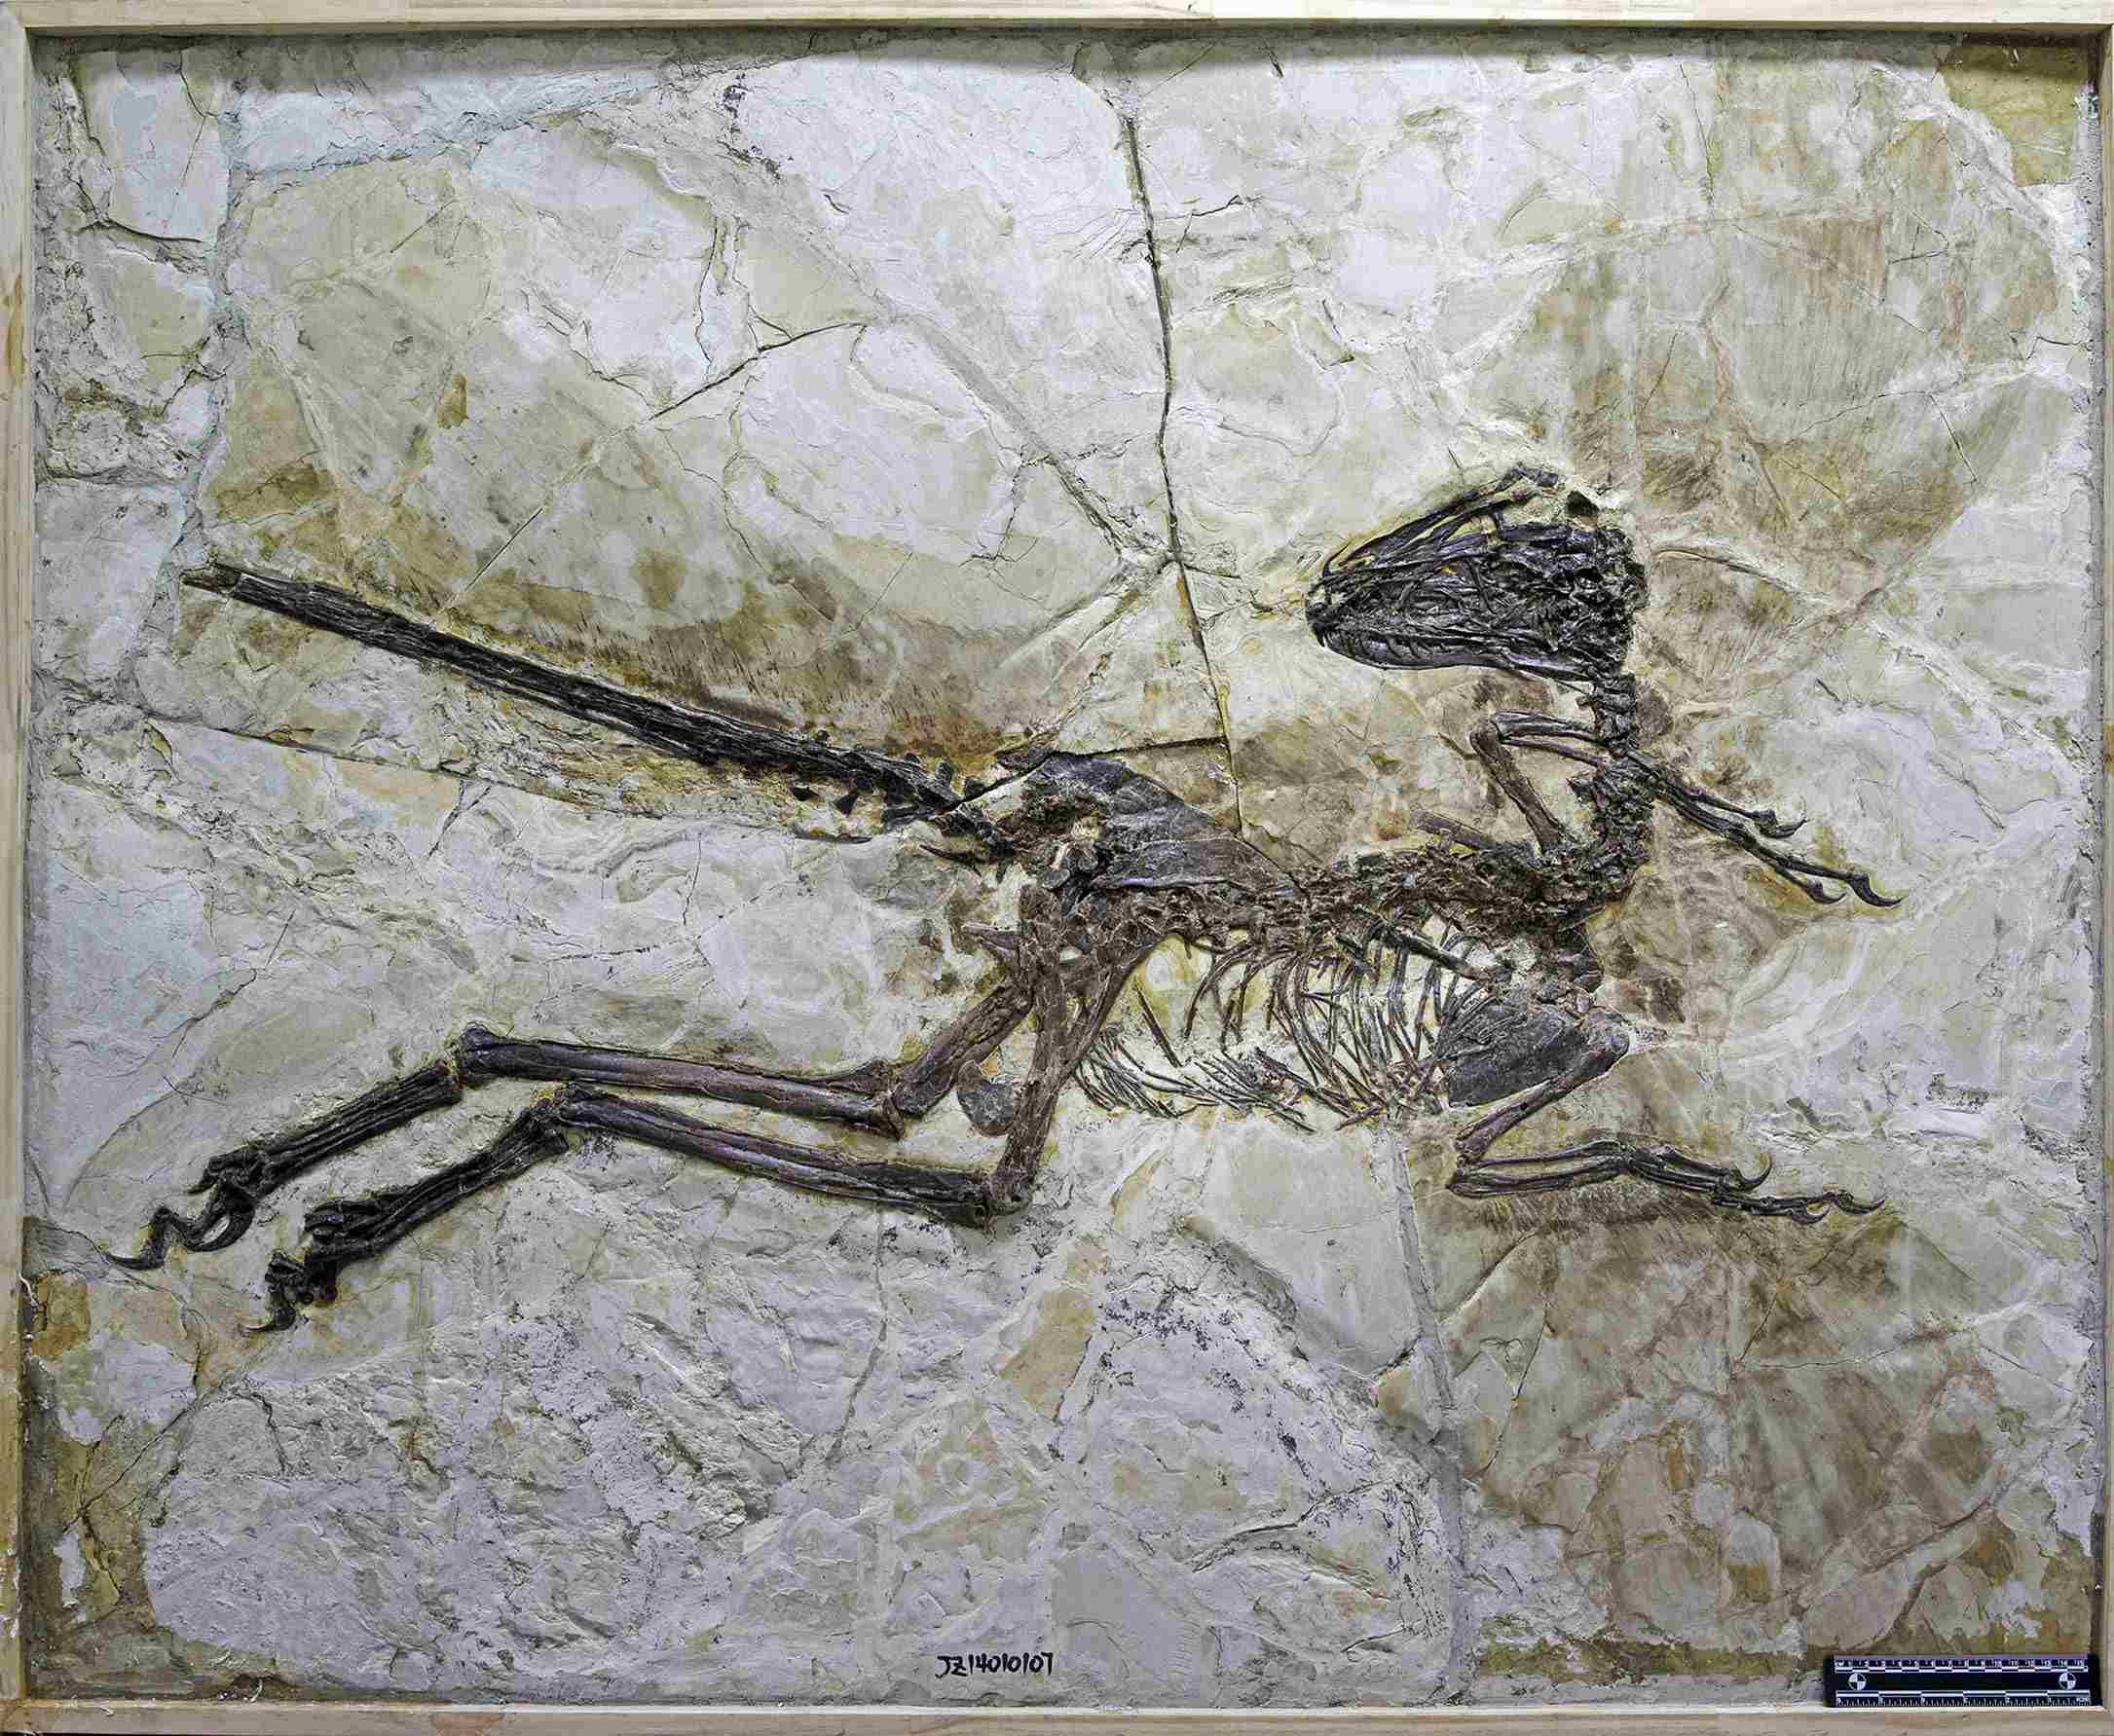 Des scientifiques viennent de découvrir le cousin chinois à plumes du vélociraptor 2